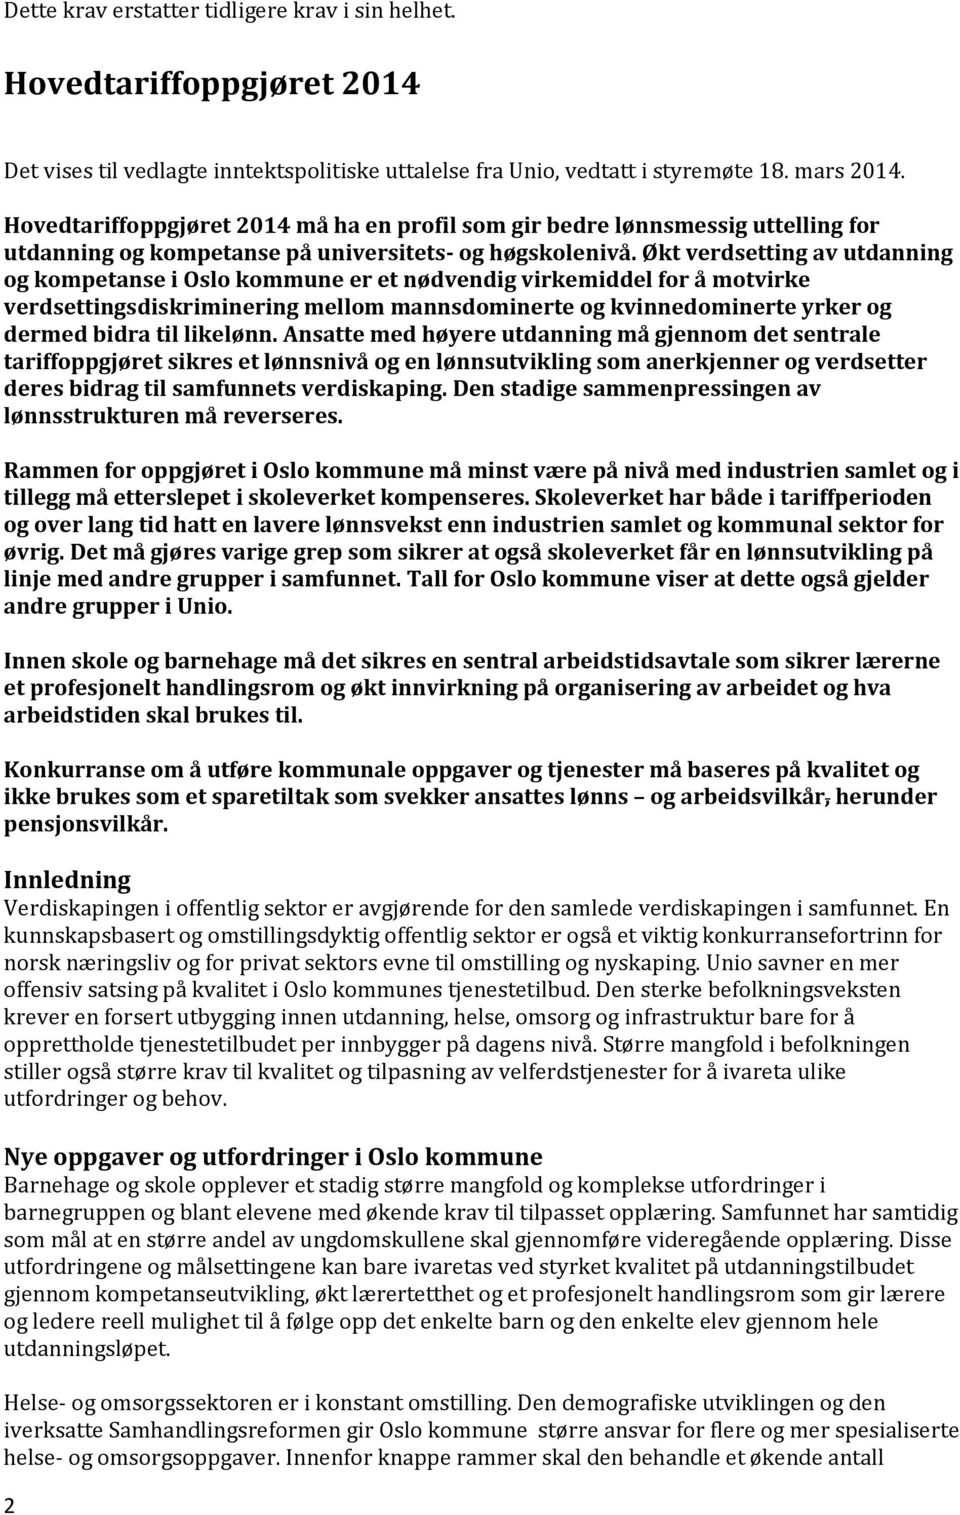 Økt verdsetting av utdanning og kompetanse i Oslo kommune er et nødvendig virkemiddel for å motvirke verdsettingsdiskriminering mellom mannsdominerte og kvinnedominerte yrker og dermed bidra til